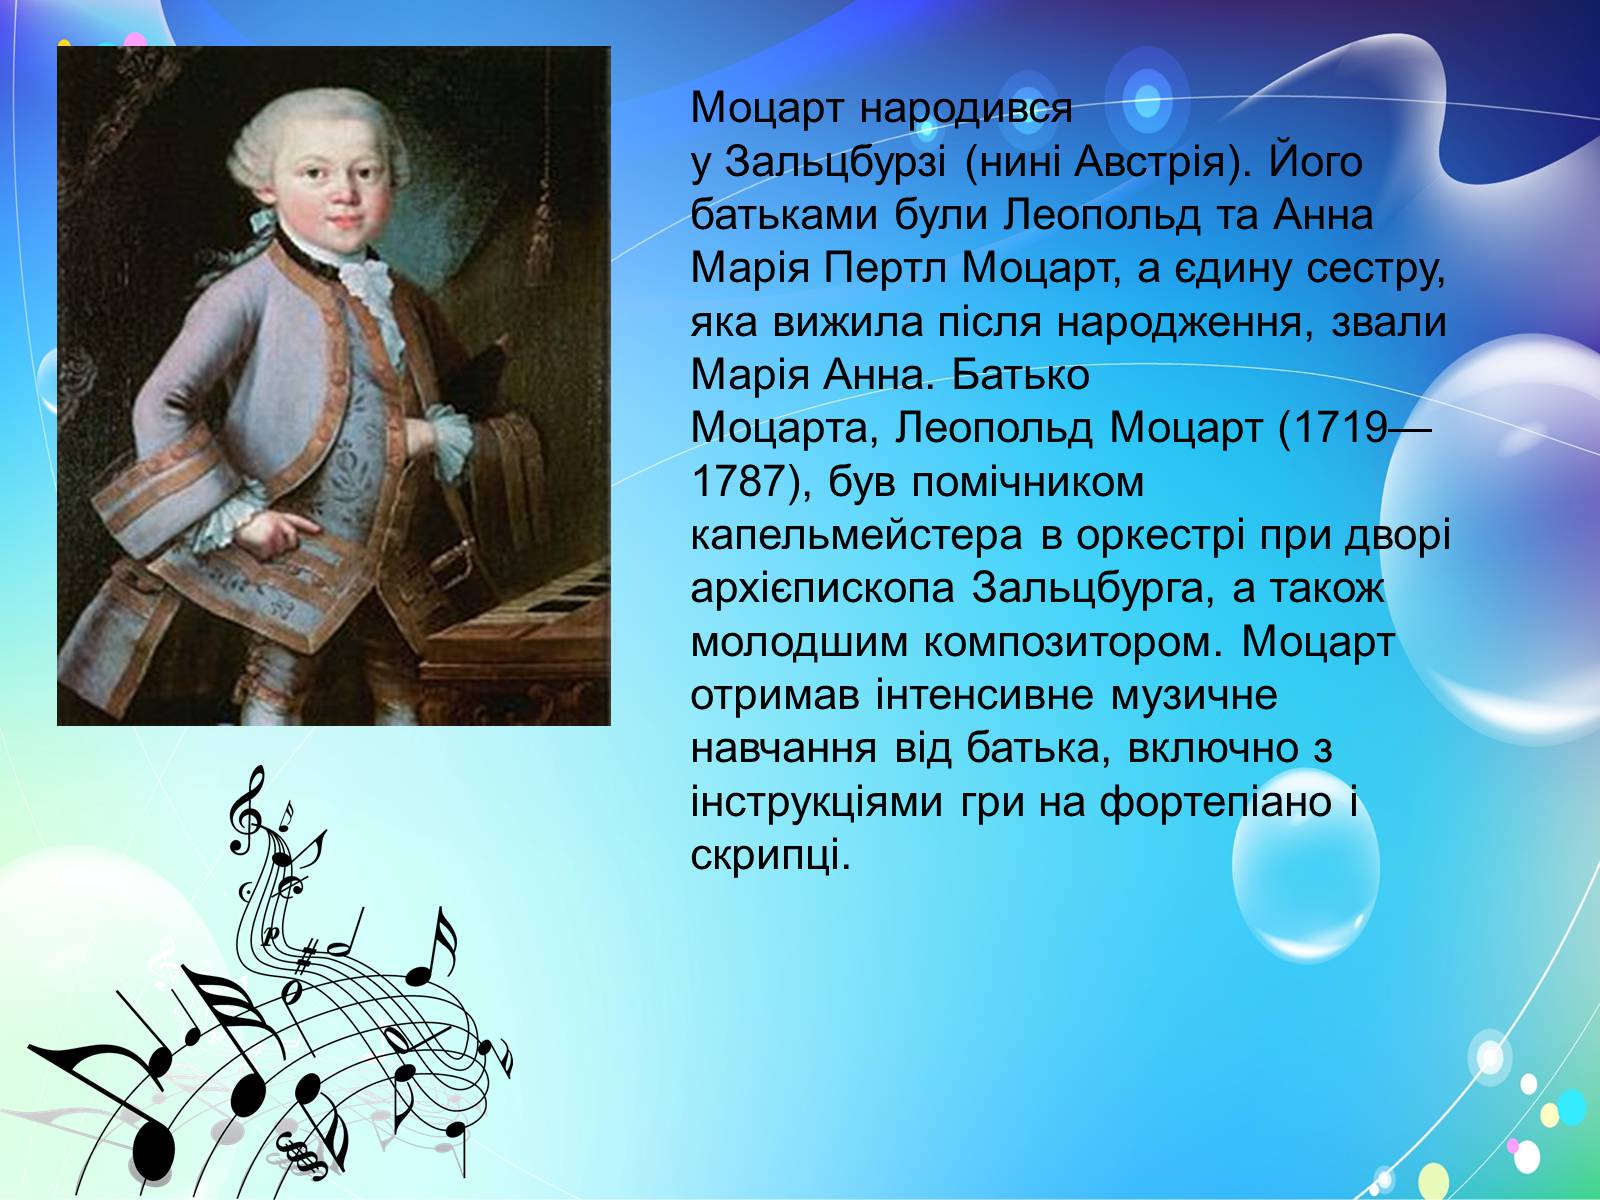 Вольфганг моцарт биография кратко. Моцарт биография для детей. Биография Моцарта. Краткая биография Моцарта. Моцарт информация для детей.